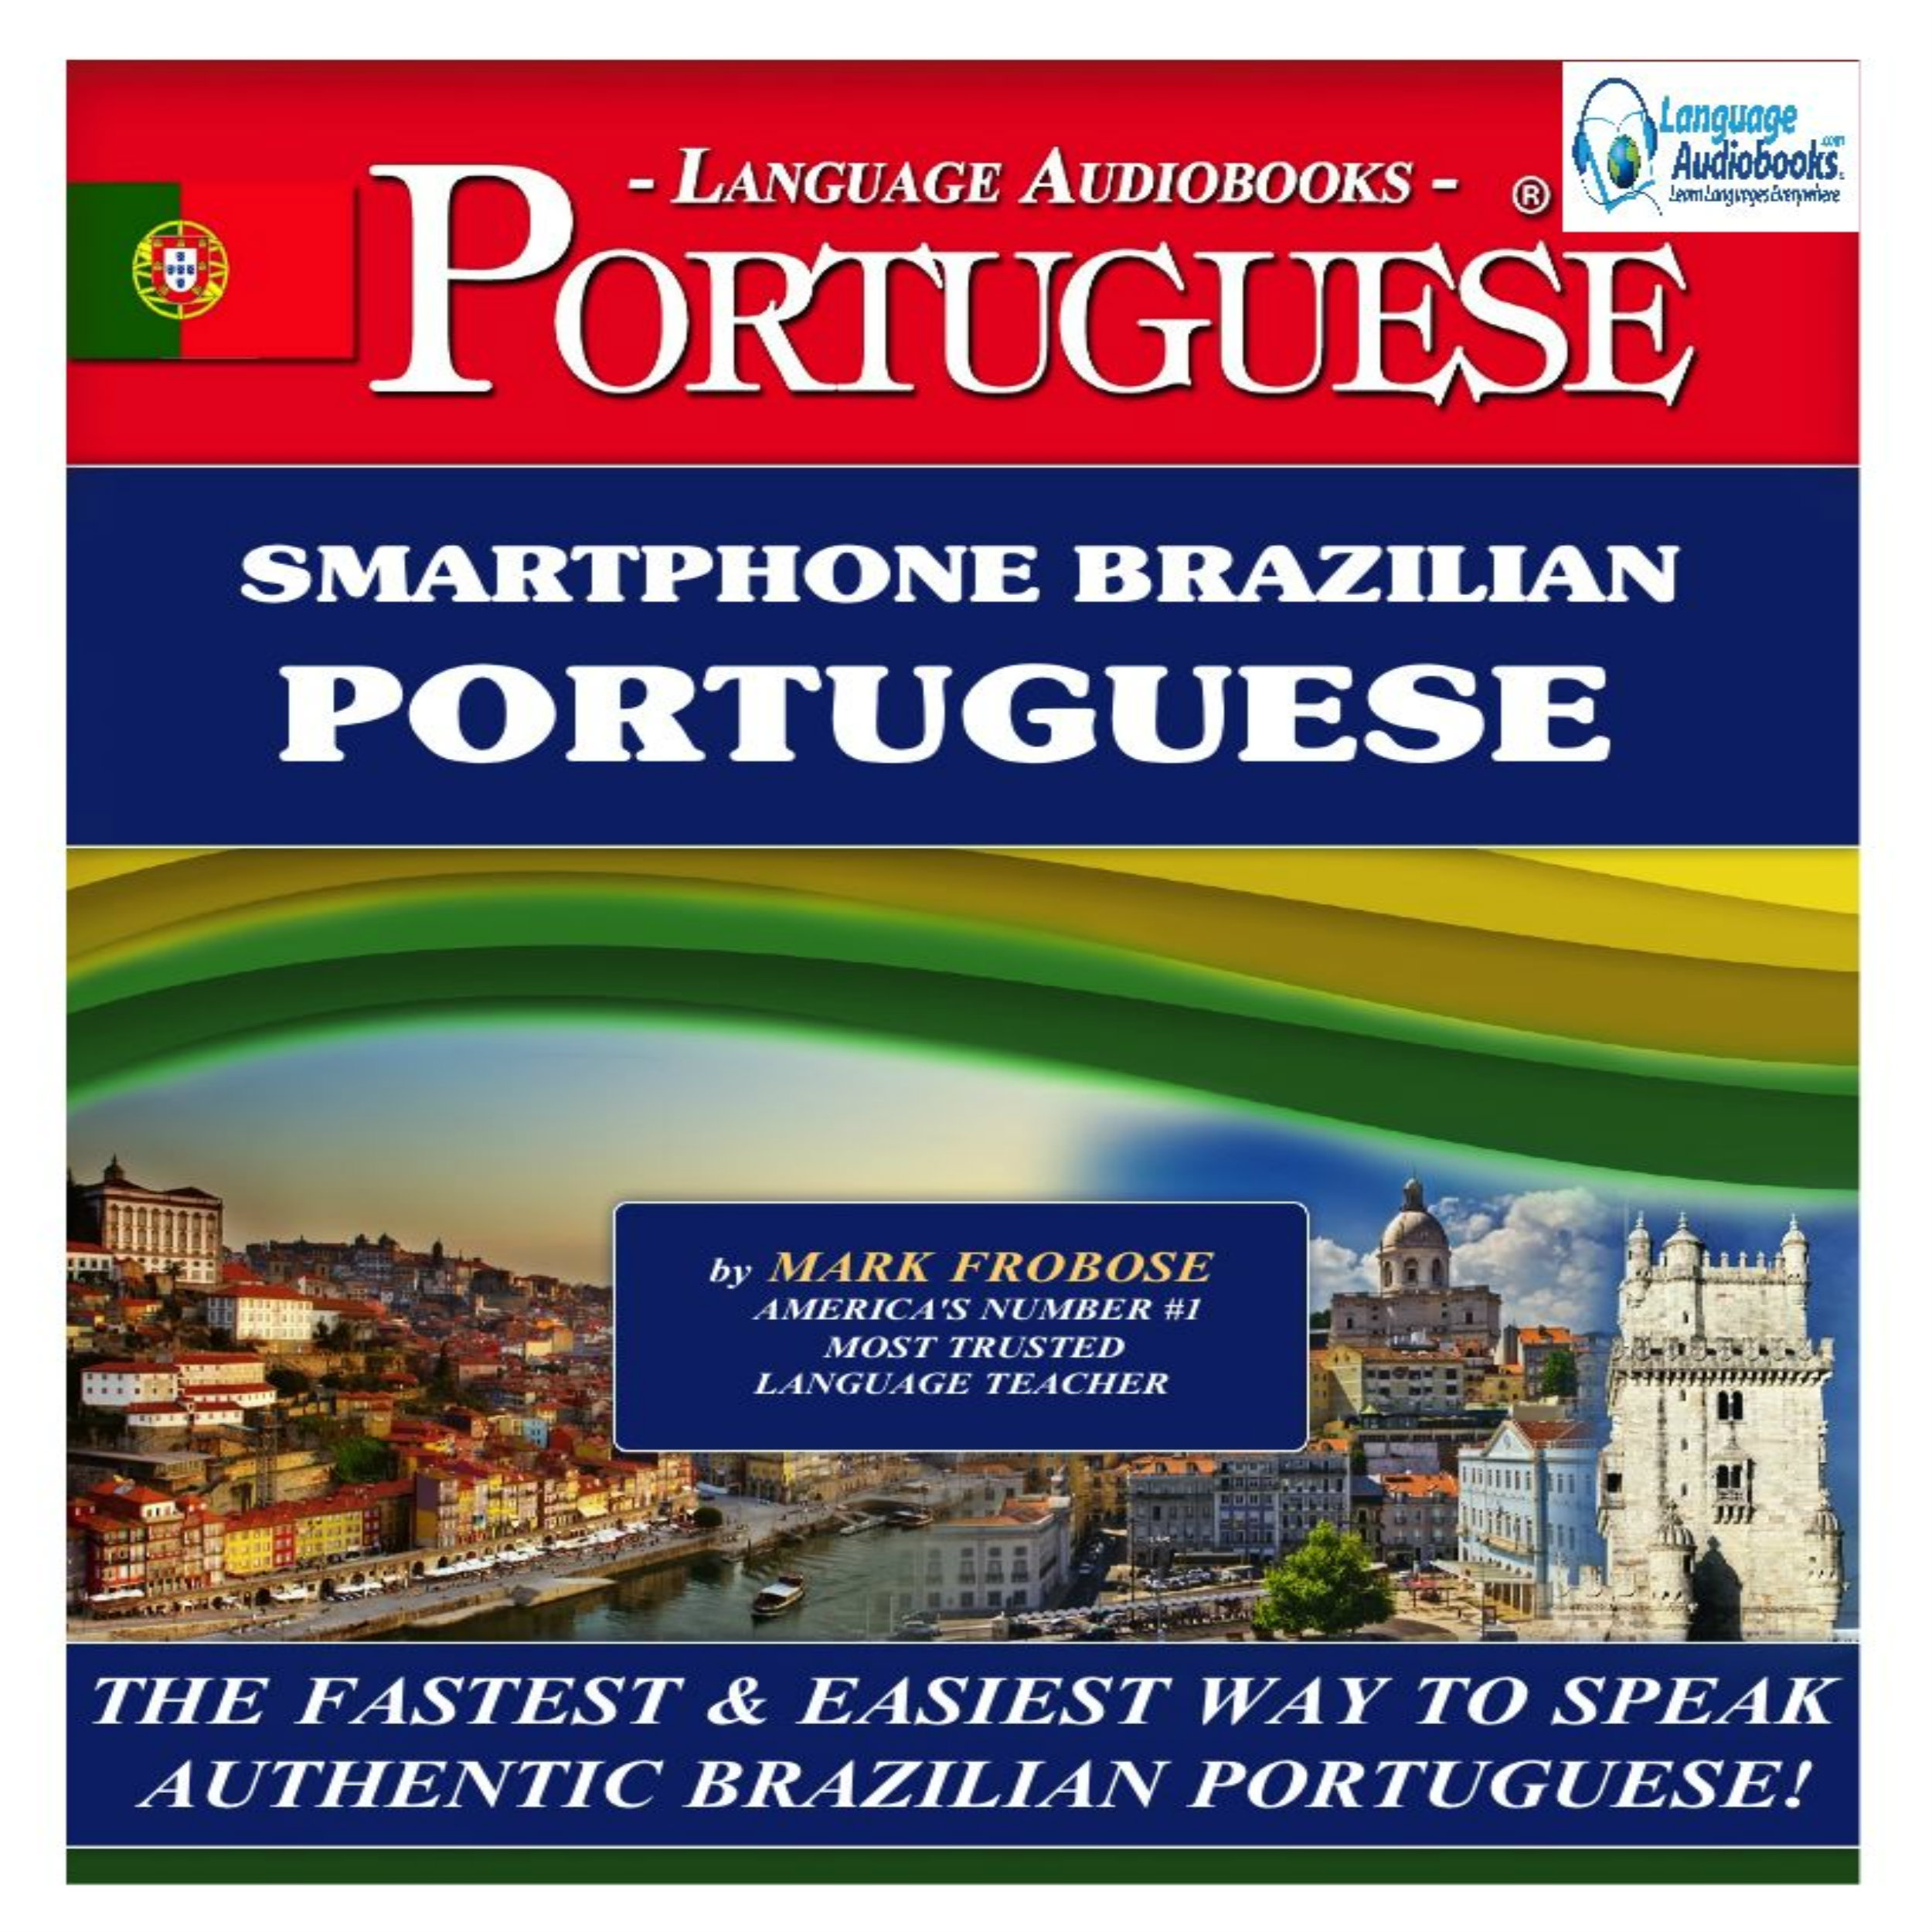 SMARTPHONE BRAZILIAN PORTUGUESE